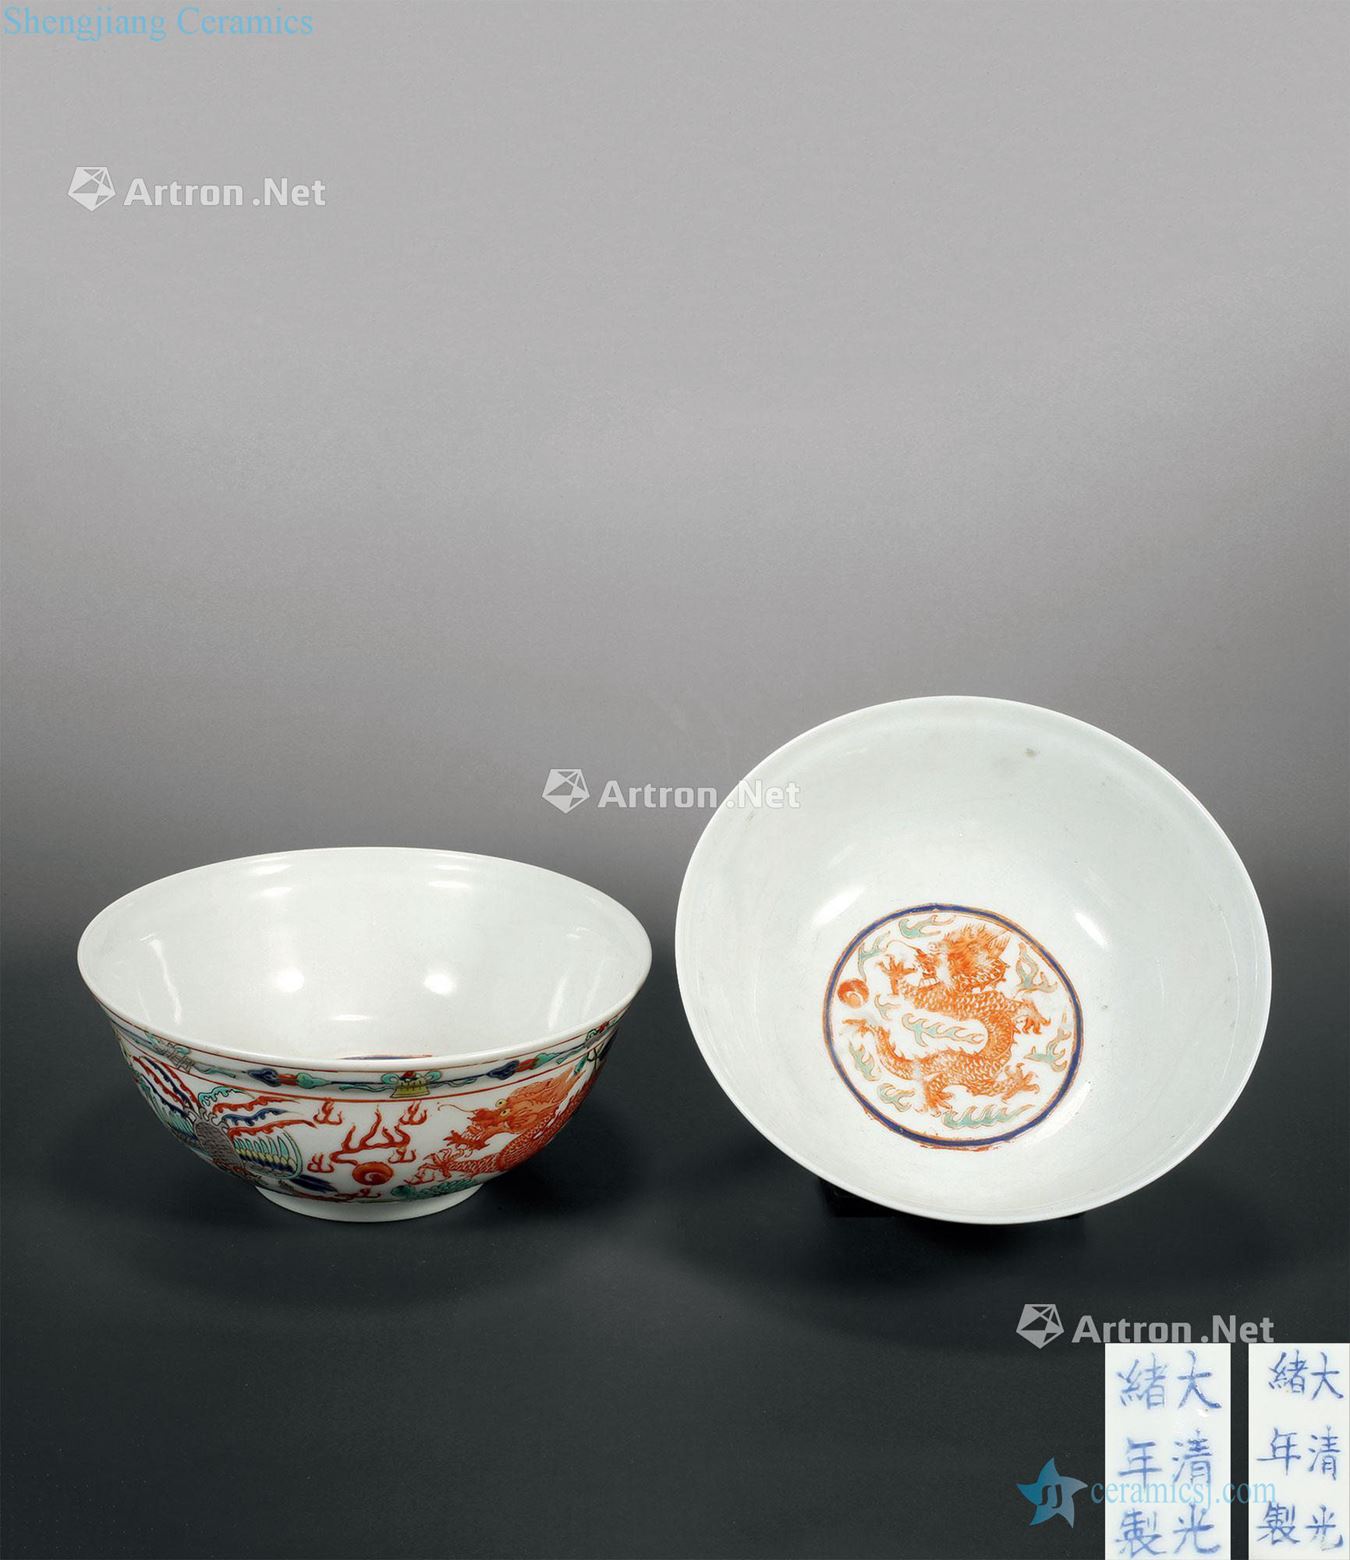 "Qing guangxu reign of qing emperor guangxu years" pastel longfeng green-splashed bowls